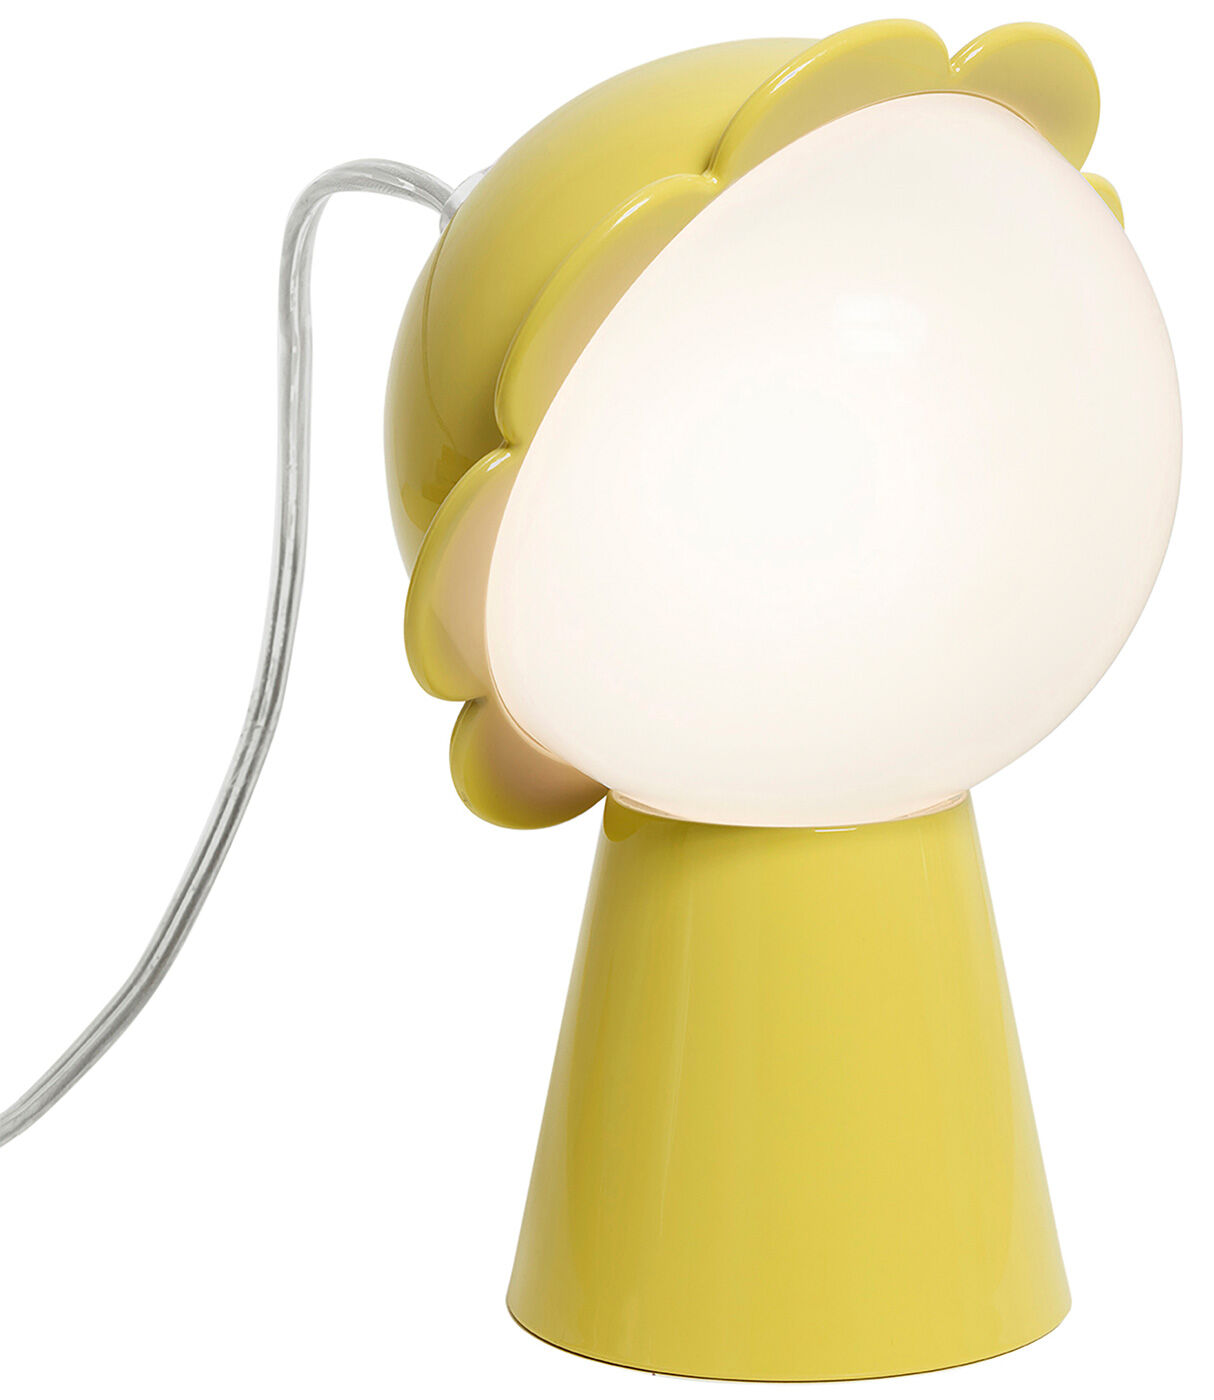 Designer-Tischleuchte "Daisy", gelbe Version - Design Nika Zupanc von Qeeboo